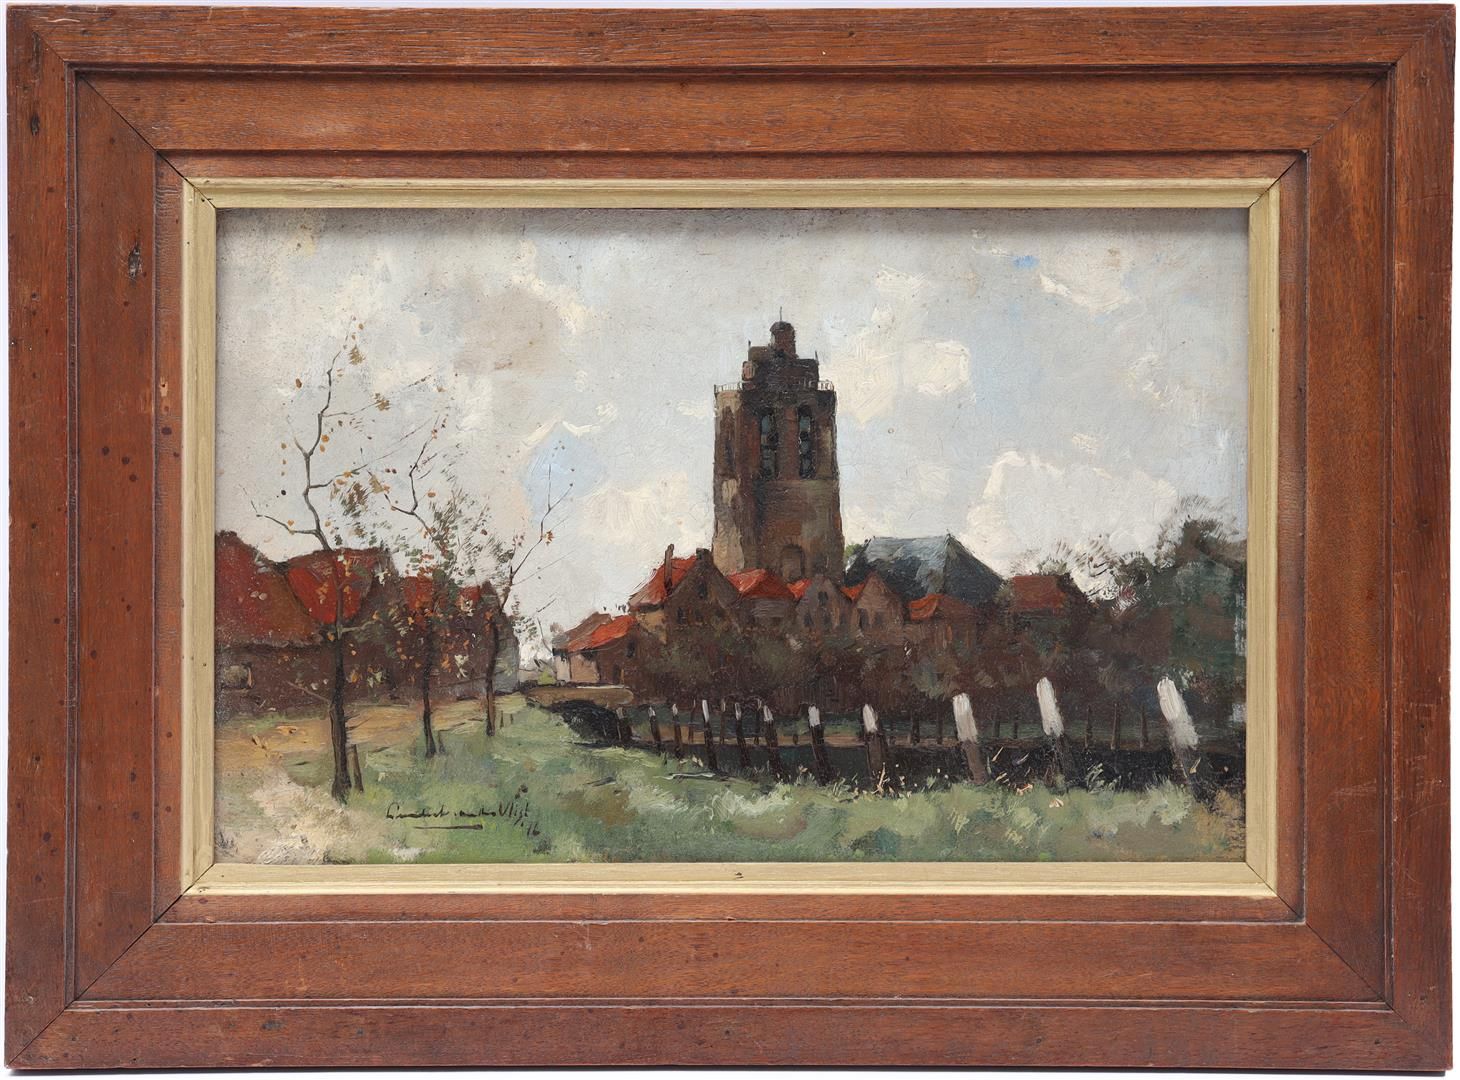 Leendert van der Vlist Leendert van der Vlist (1894-1962)

带有教堂塔楼的村庄景色，面板上的日期是19&hellip;